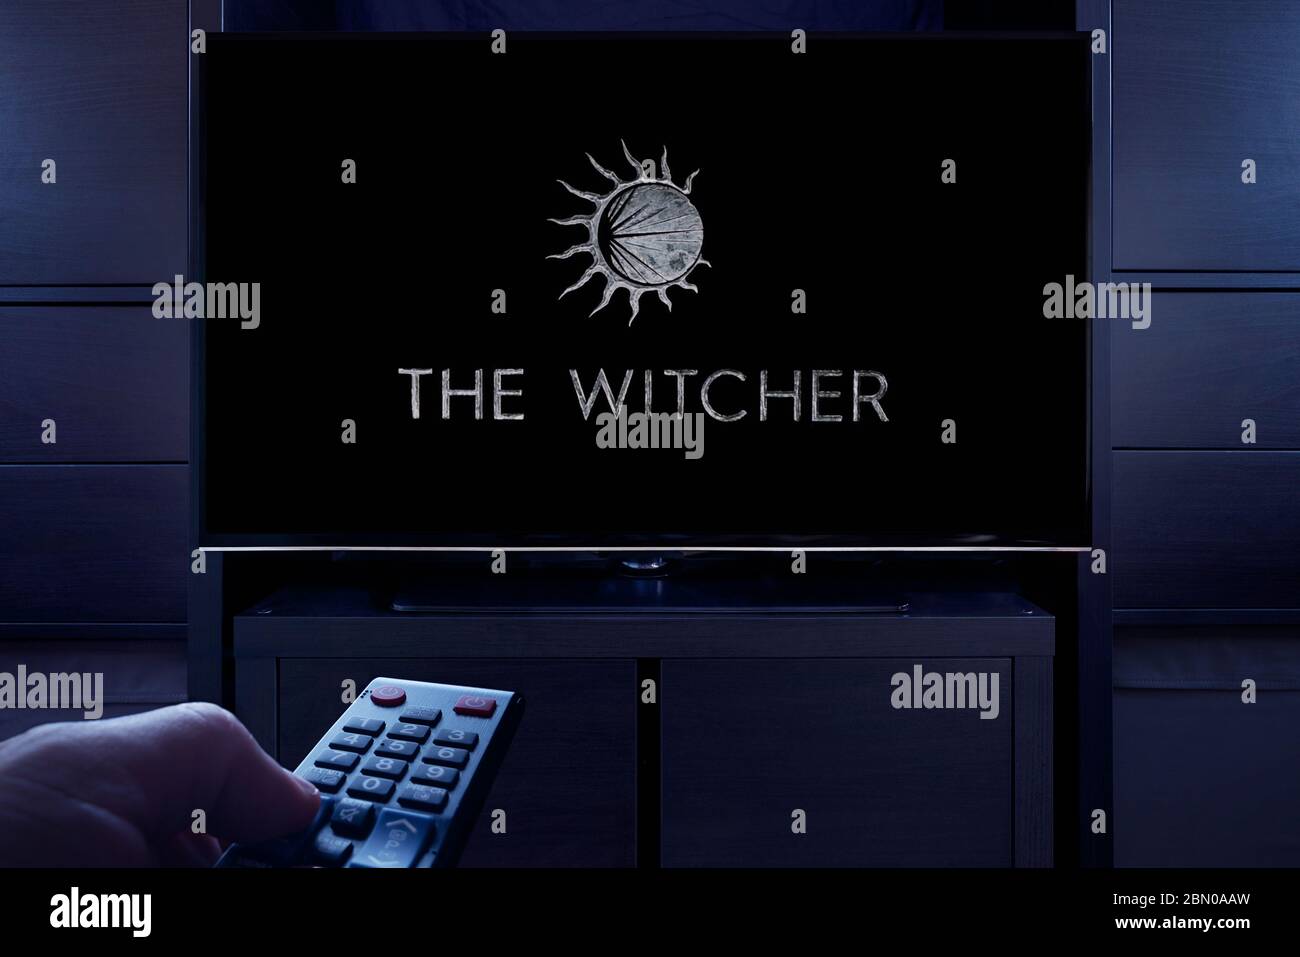 Un homme pointe une télécommande vers le téléviseur qui affiche l'écran principal de titre de la Witcher (usage éditorial uniquement). Banque D'Images